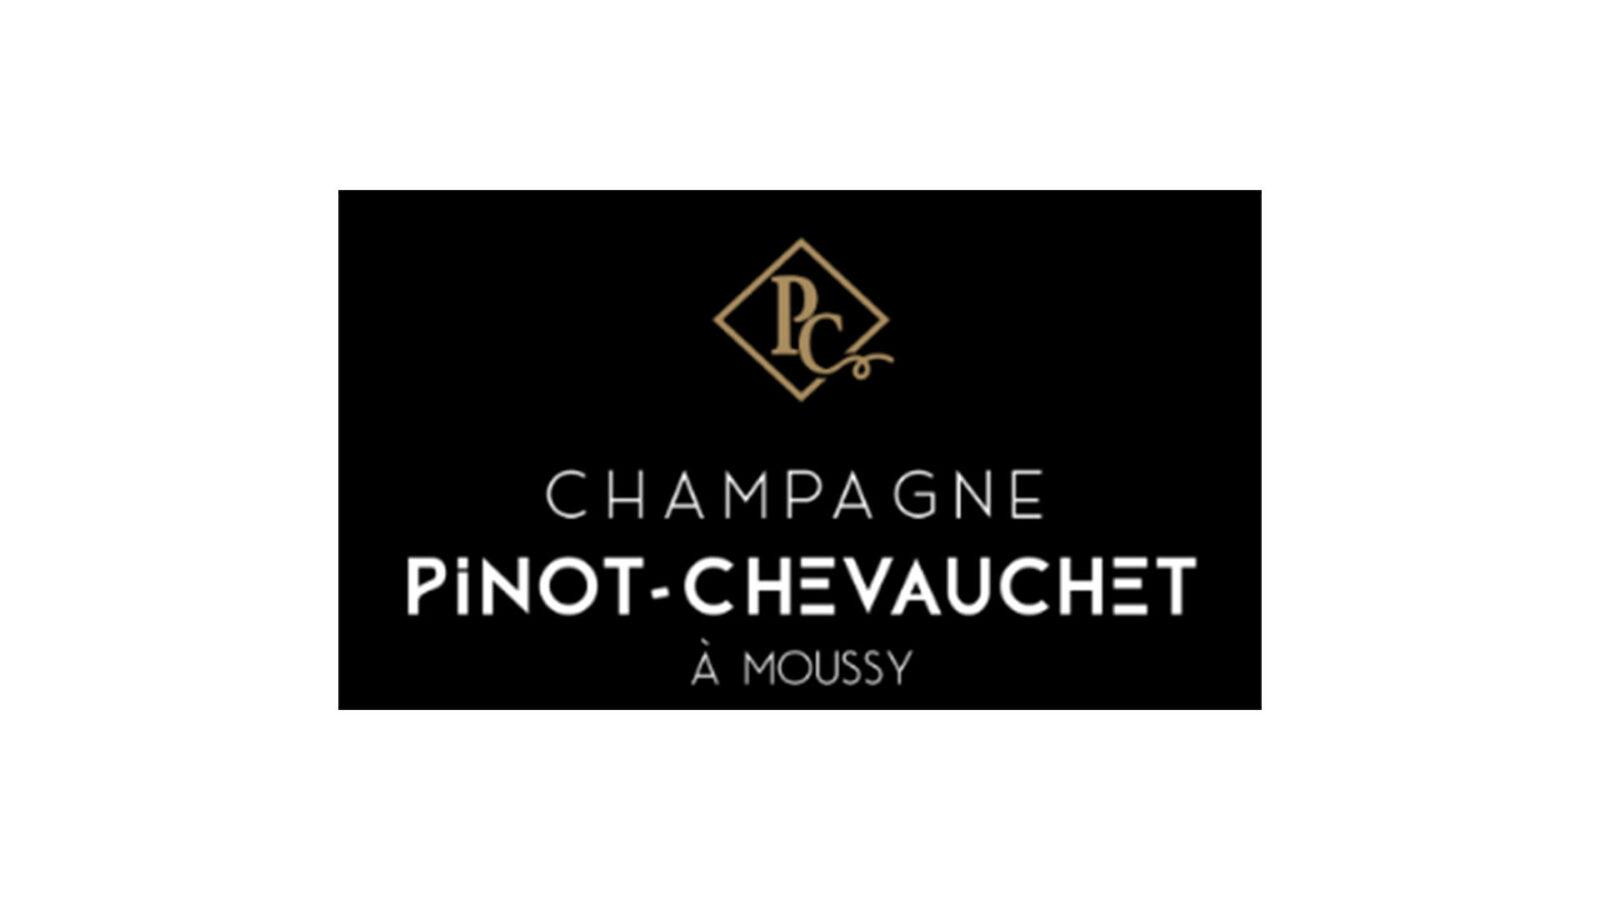 Champagne Pinot-Chevauchet